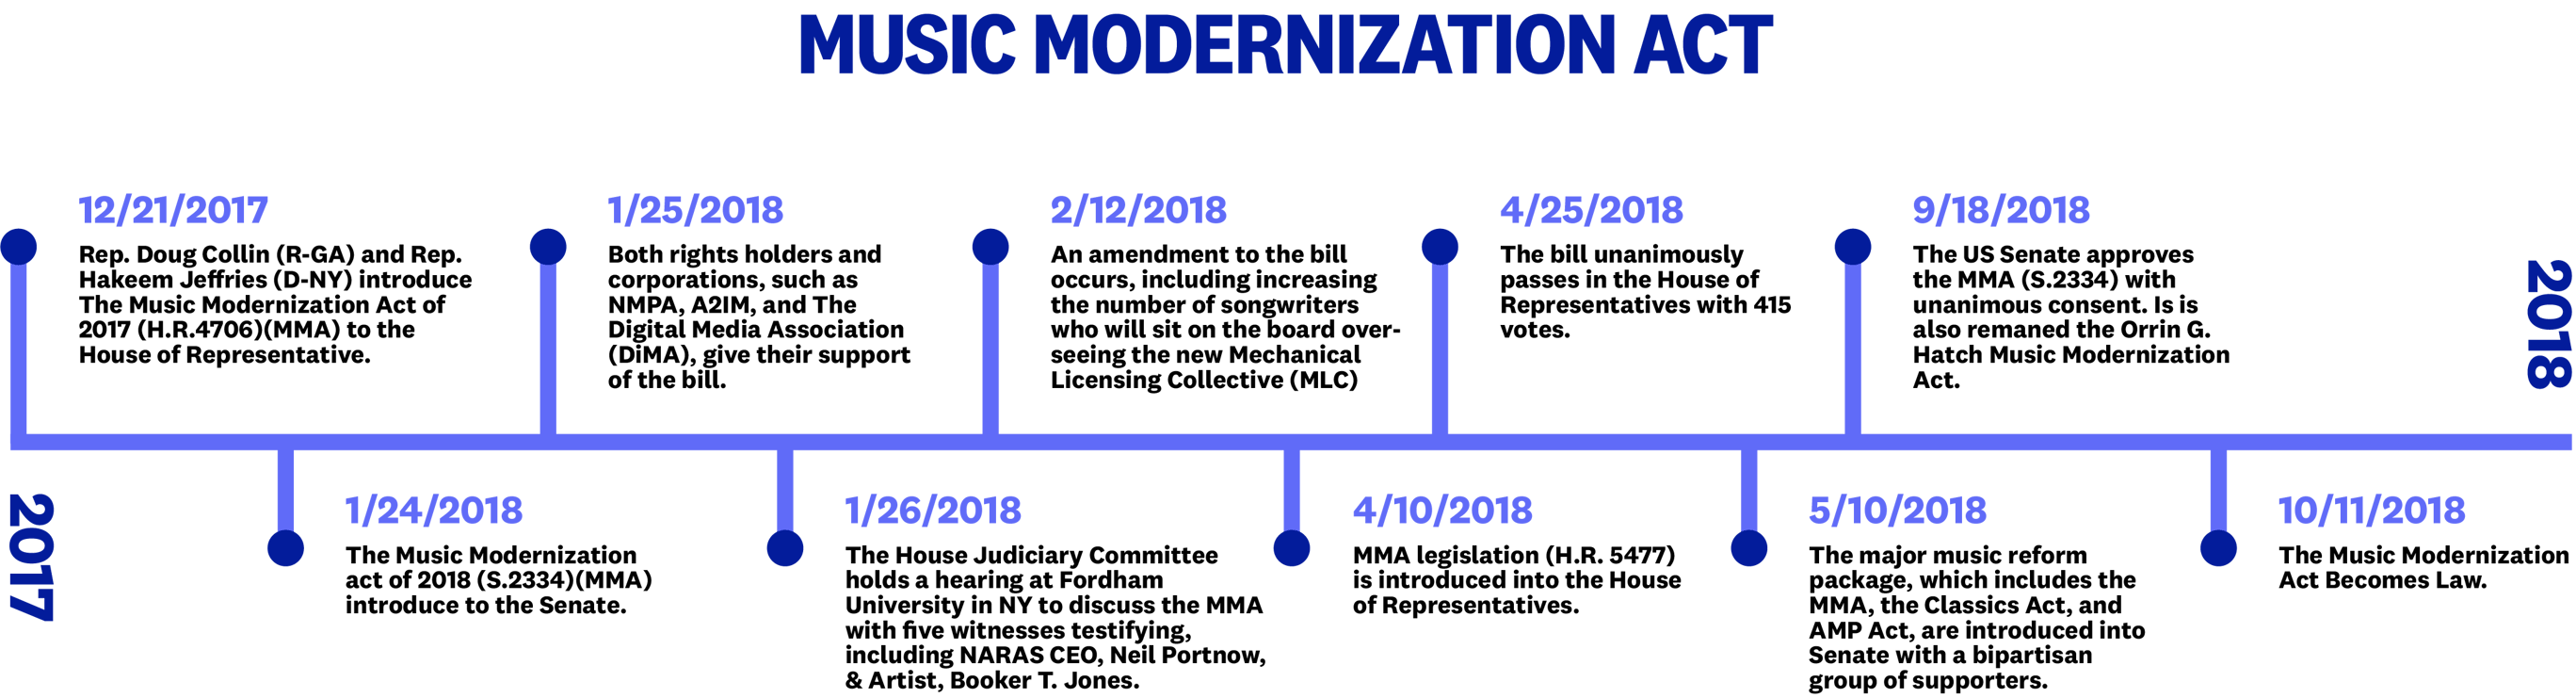 Music Modernization Act-1